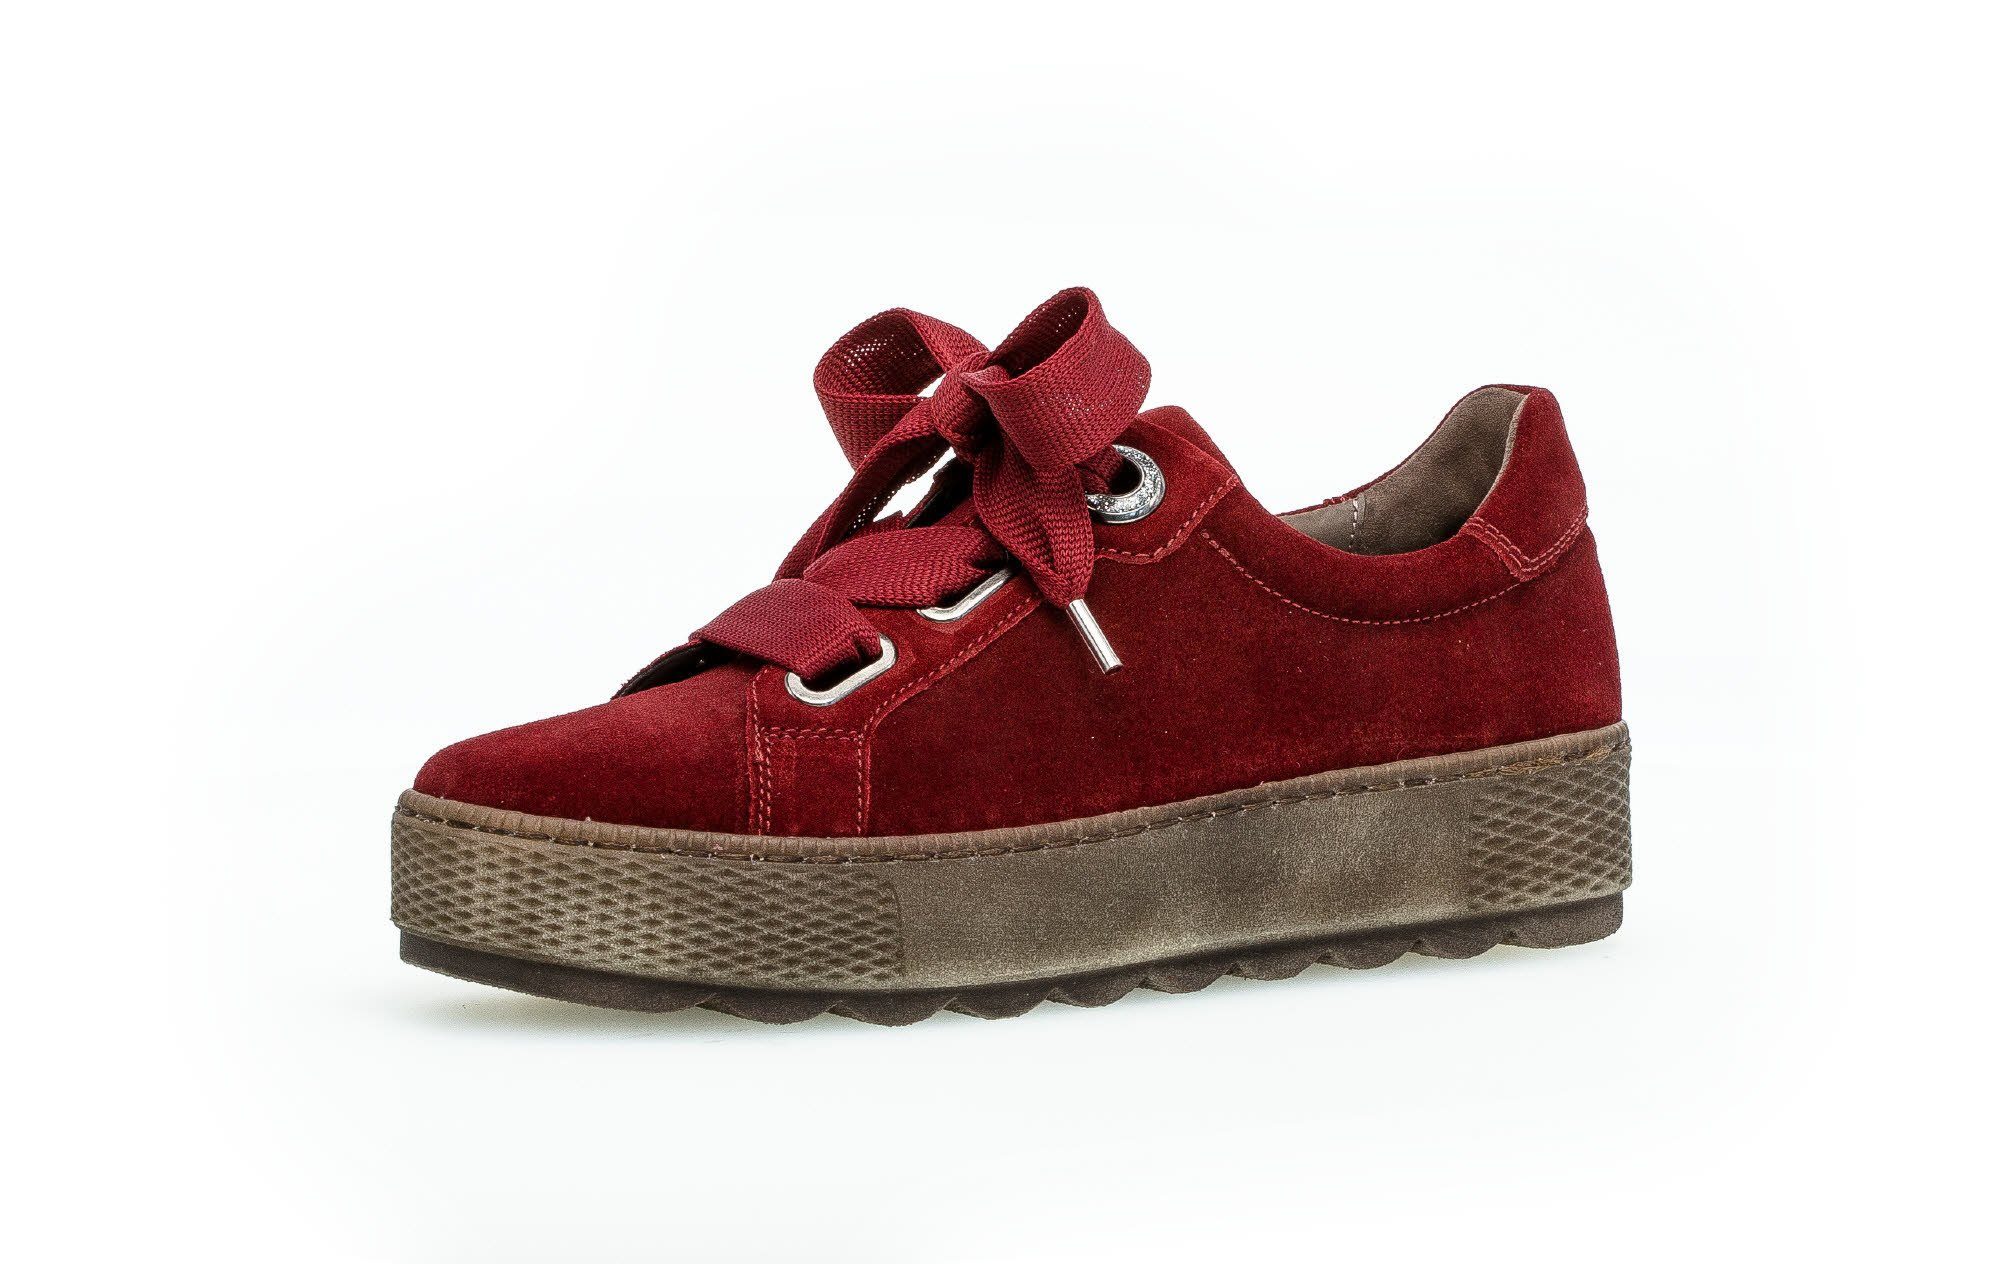 Rote Gabor Sneaker online kaufen | OTTO